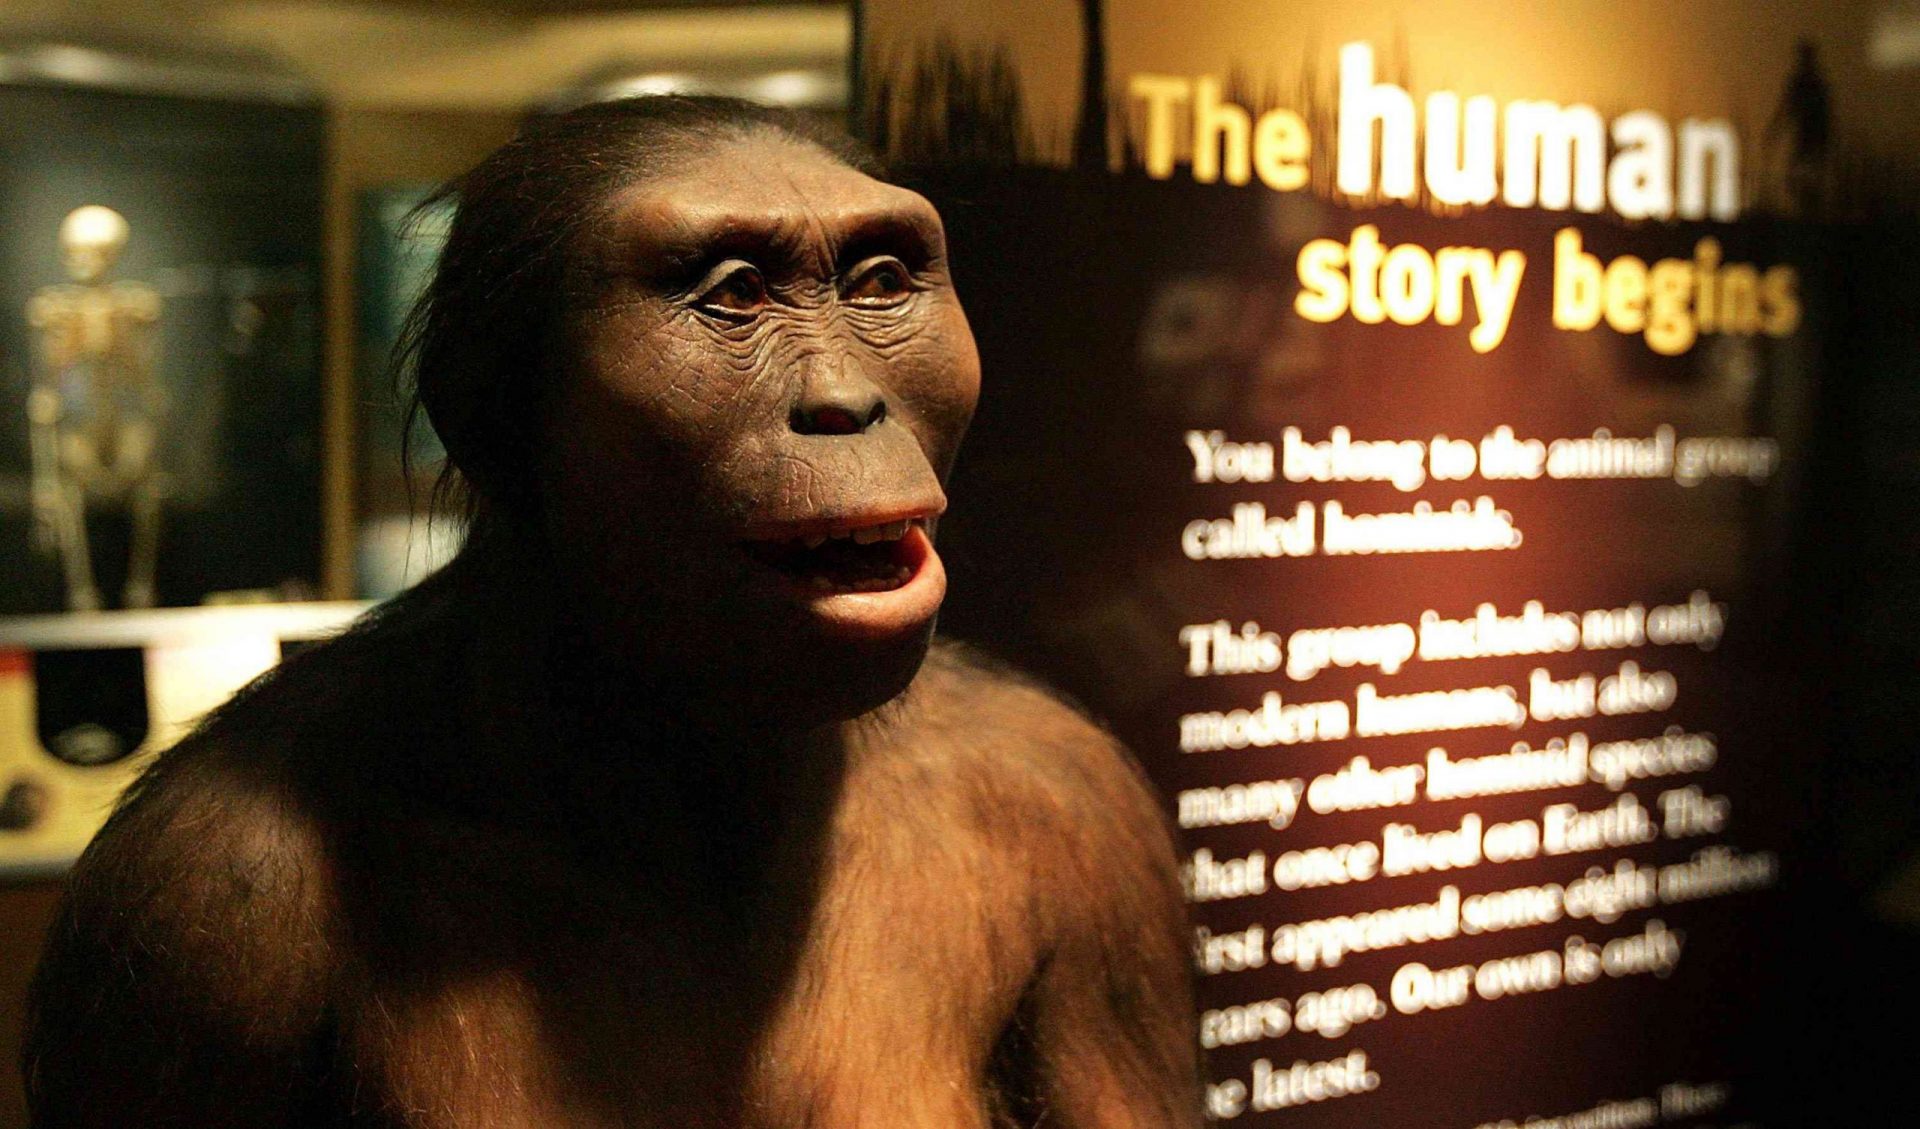 Lucy la australopitecina, Australopithecus afarensis